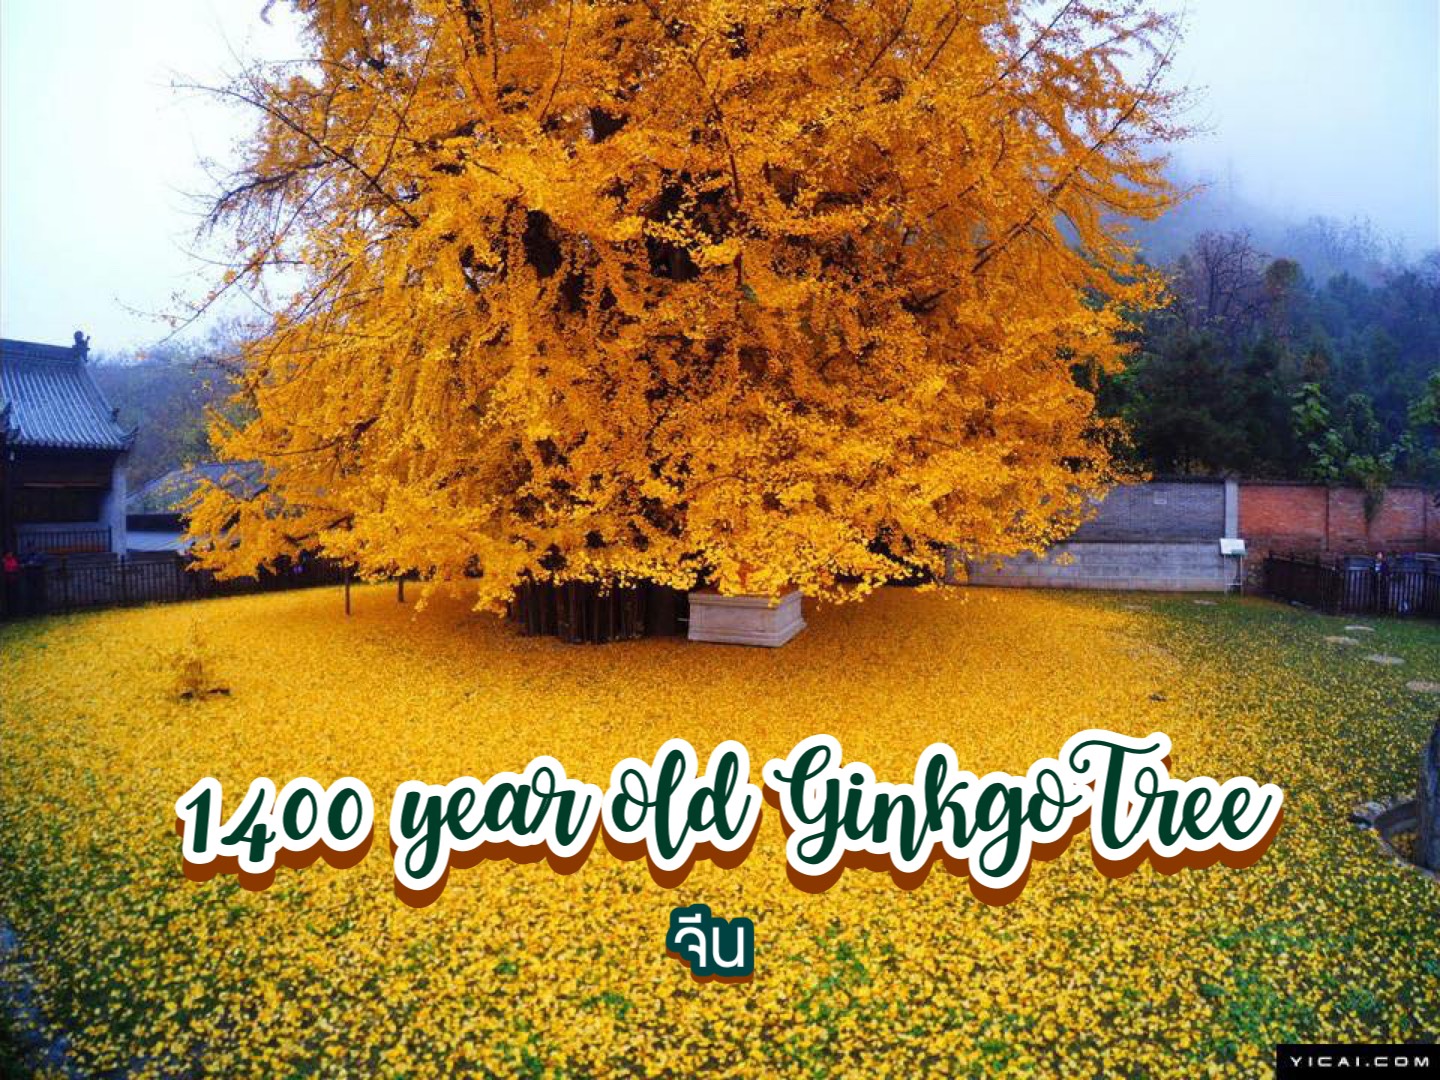 ต้นแปะก๊วยอายุ 1,400 ปี Ginkgo Tree จีน